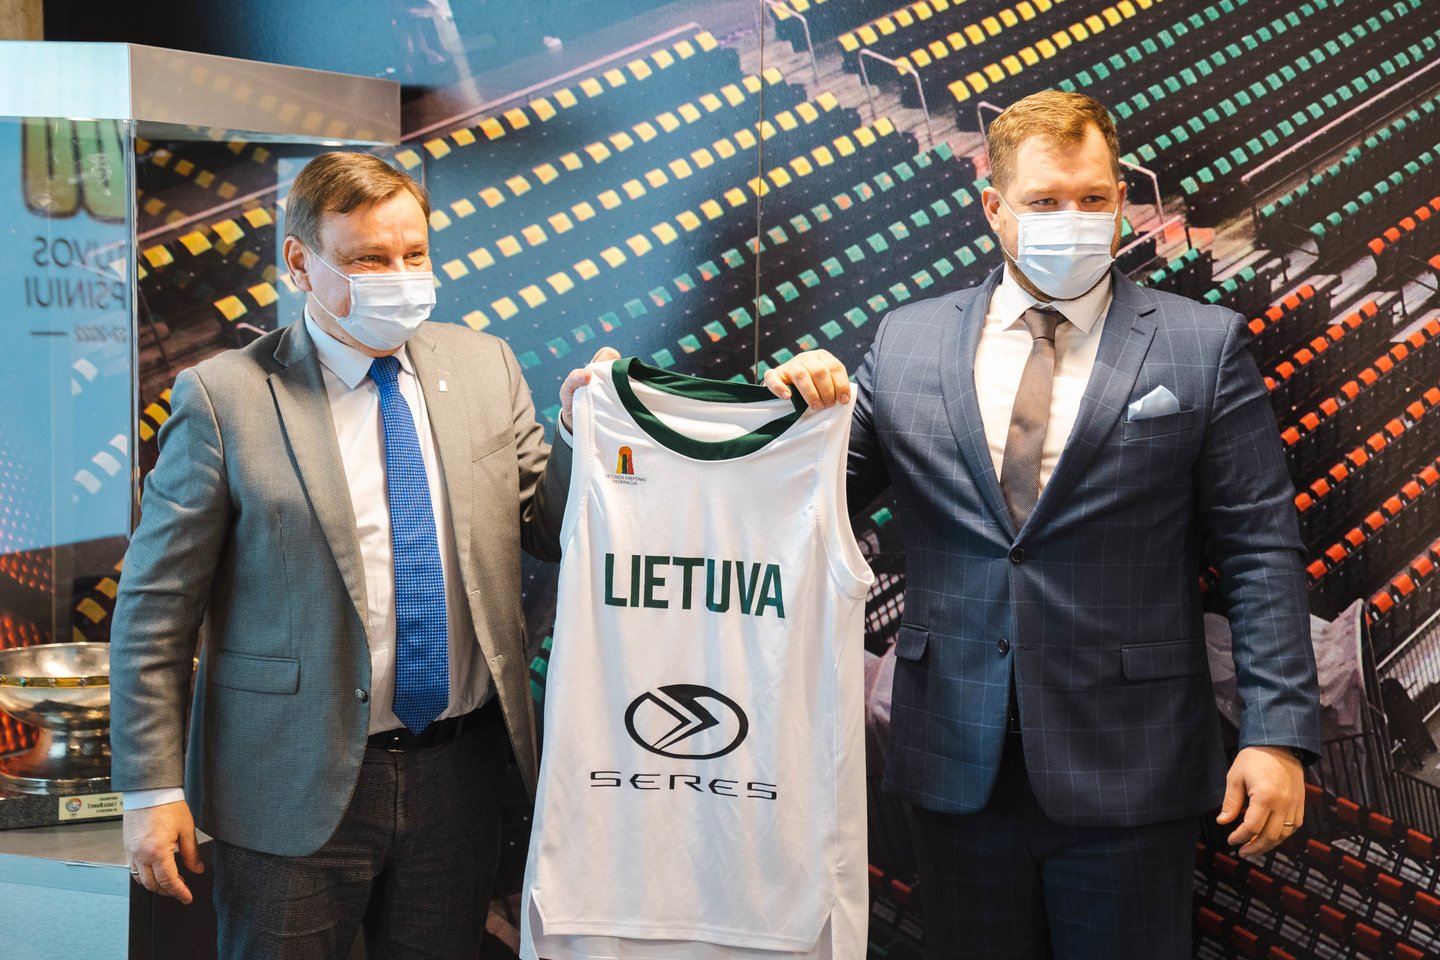  Talentingiausiu Lietuvos krepšininku laikomas M. Buzelis sulauks kvietimo į Lietuvos rinktinės stovyklą.<br> G. Bitvinsko nuotr.